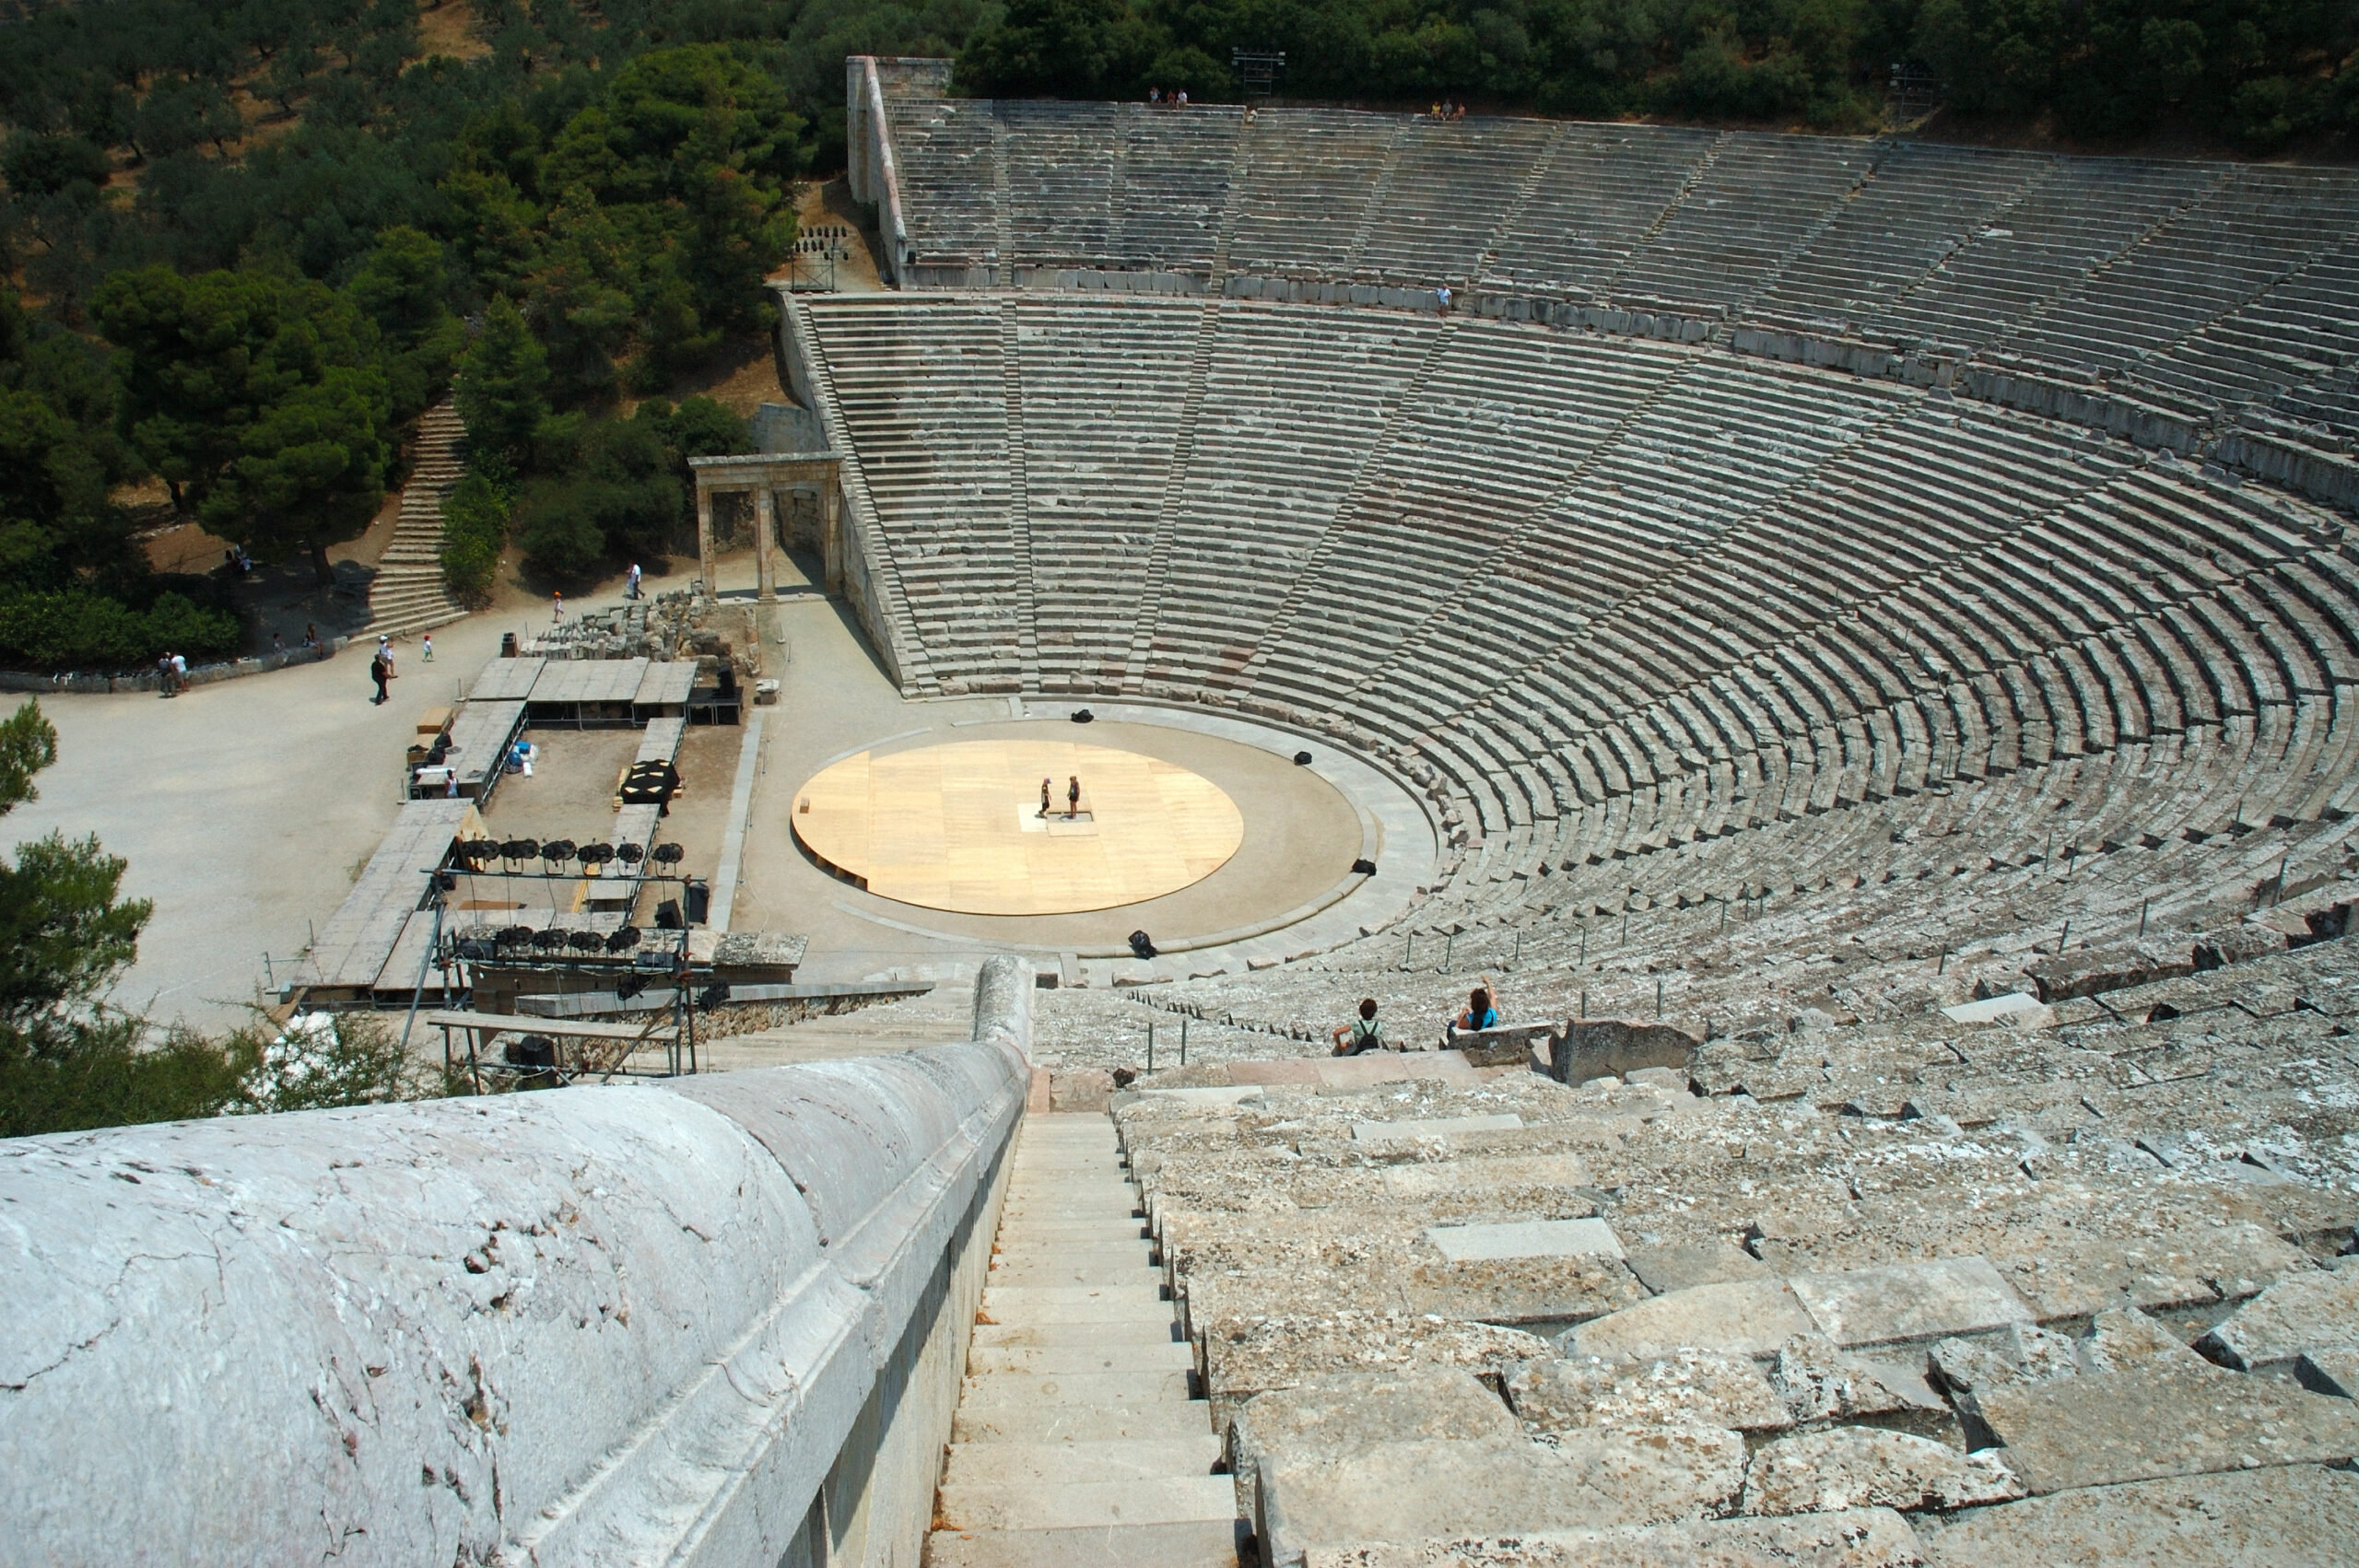 Epidaurus ancient theater